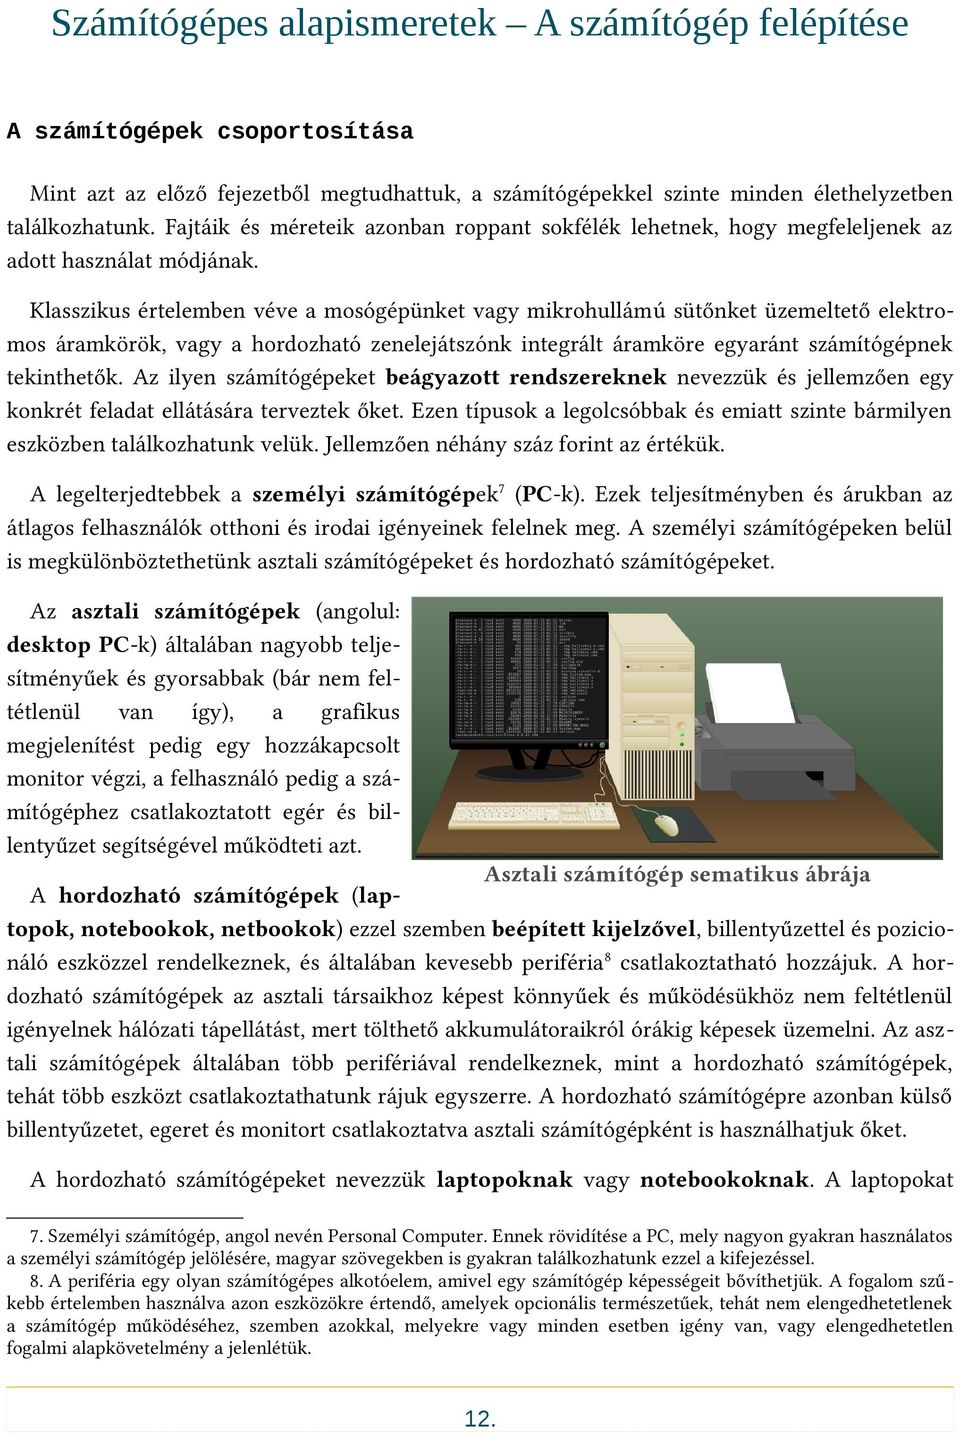 Számítógépes alapismeretek A számítógép felépítése - PDF Free Download